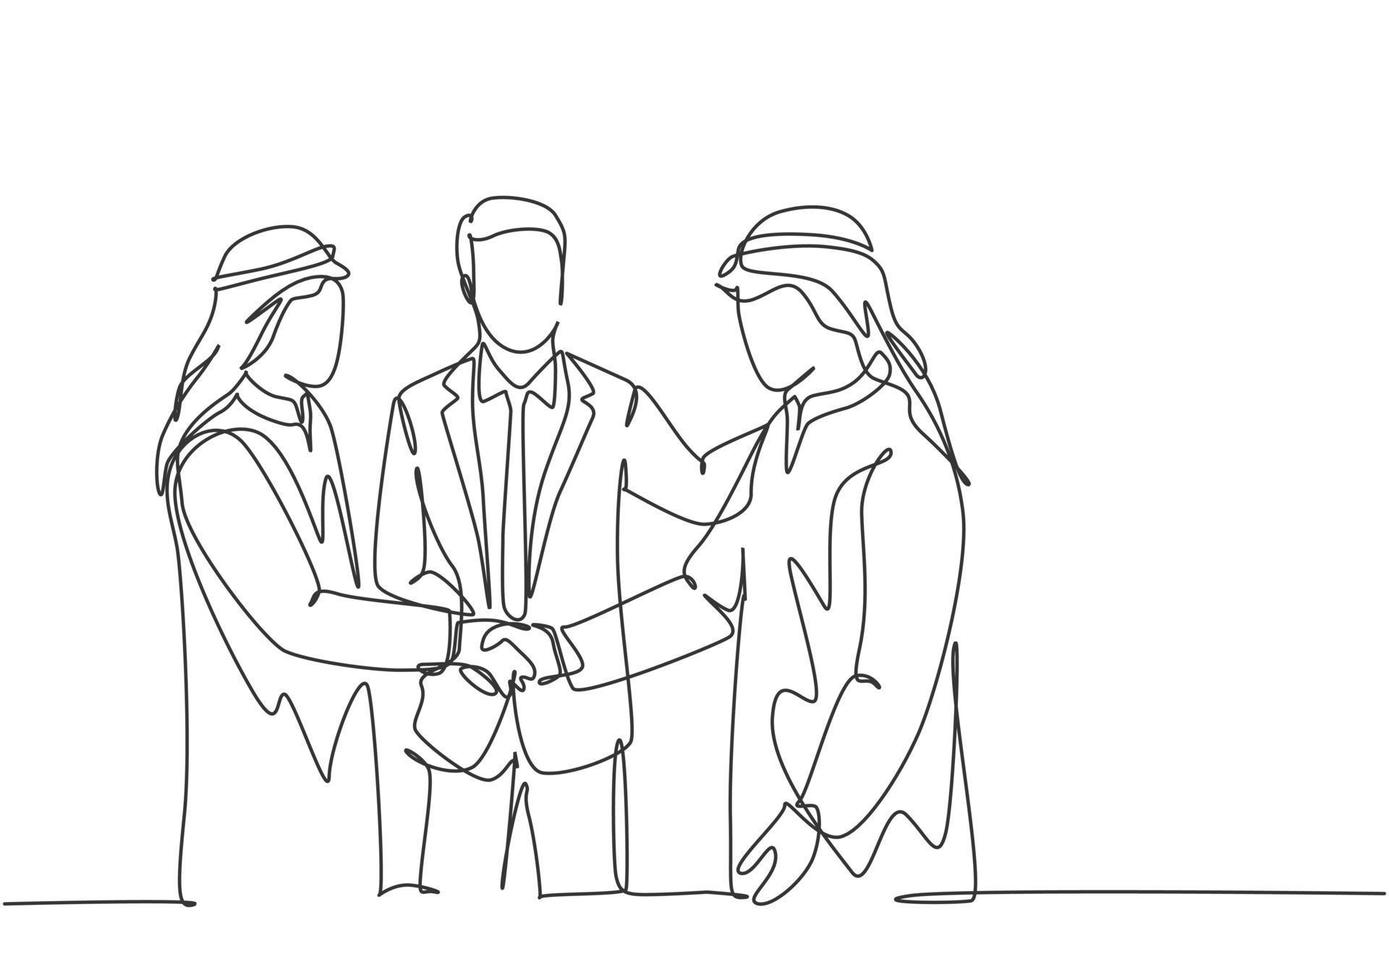 un disegno a tratteggio continuo di un giovane uomo d'affari musulmano che stringe la mano al suo collega. uomini d'affari sauditi con shemag, kandura, sciarpa, abbigliamento kefiah. illustrazione vettoriale di disegno a linea singola